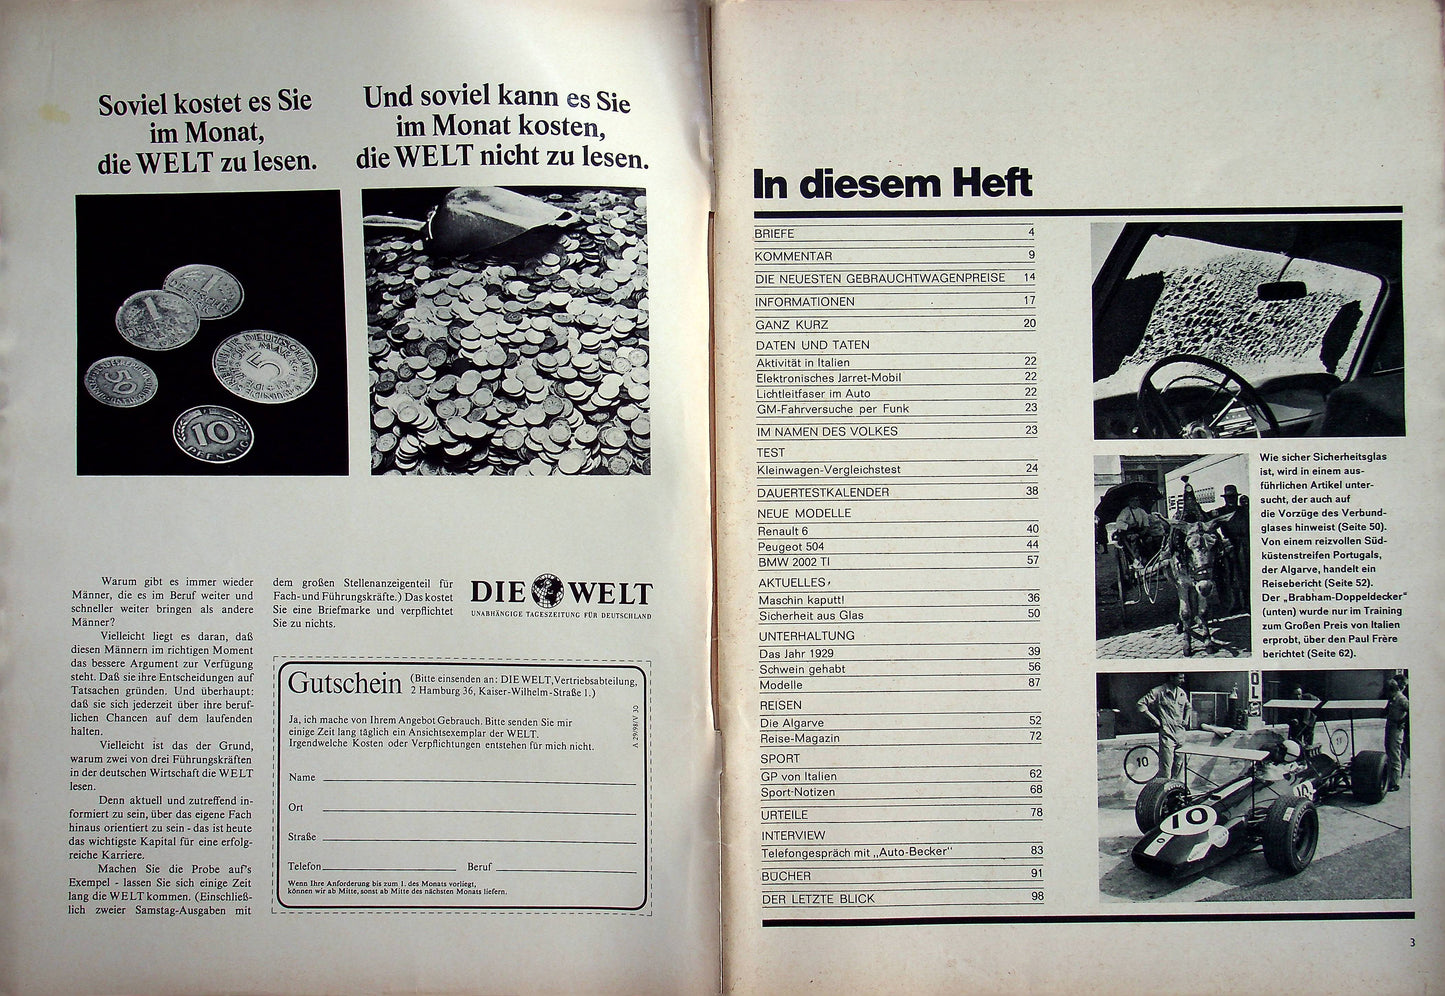 Auto Motor und Sport 20/1968